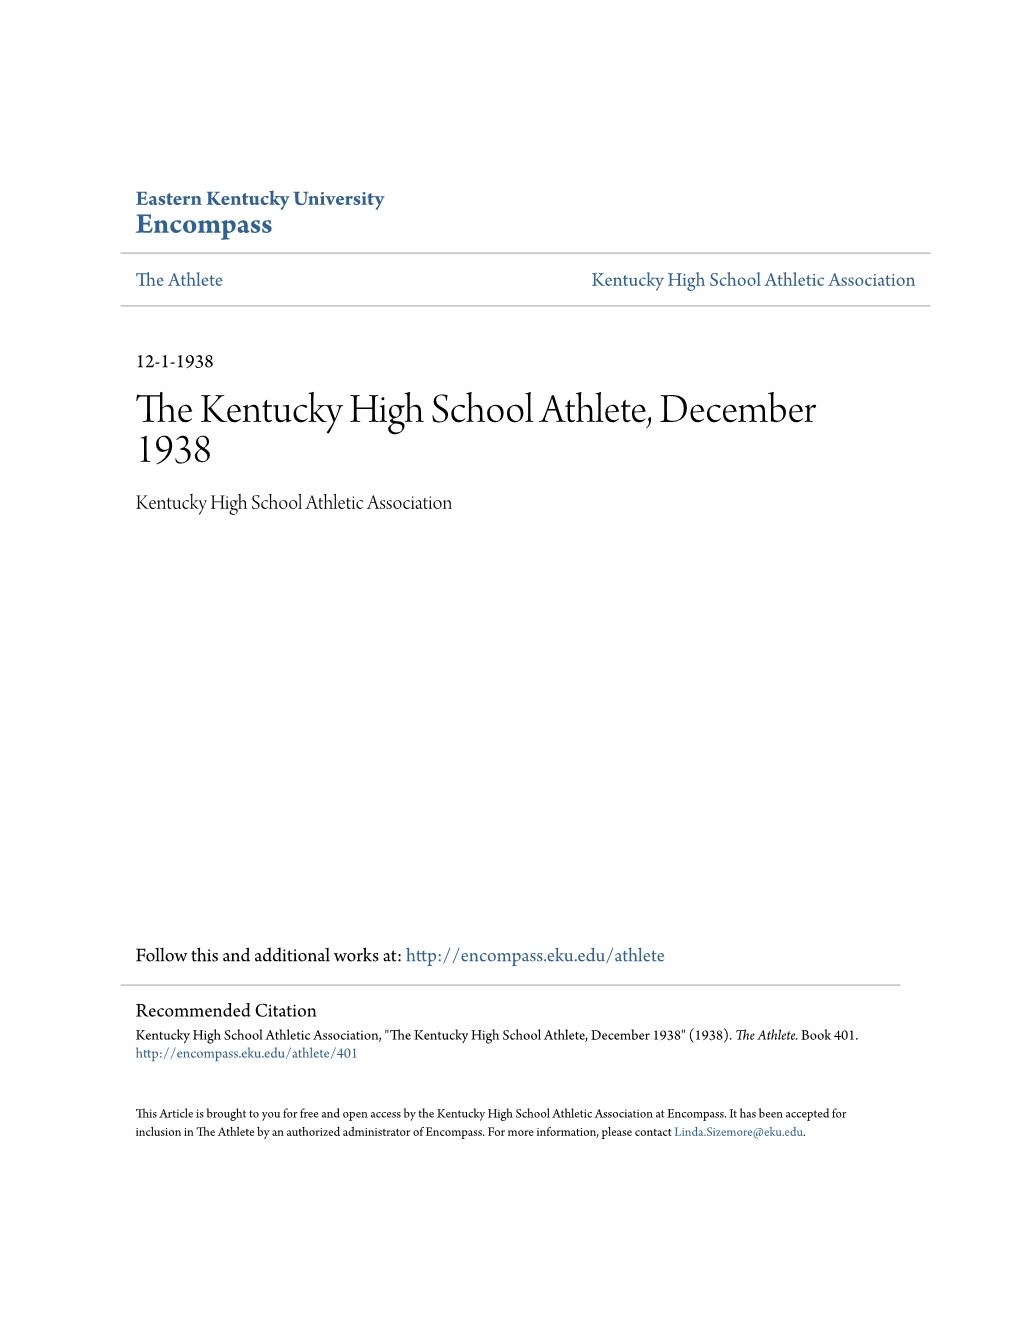 The Kentucky High School Athlete, December 1938 Kentucky High School Athletic Association